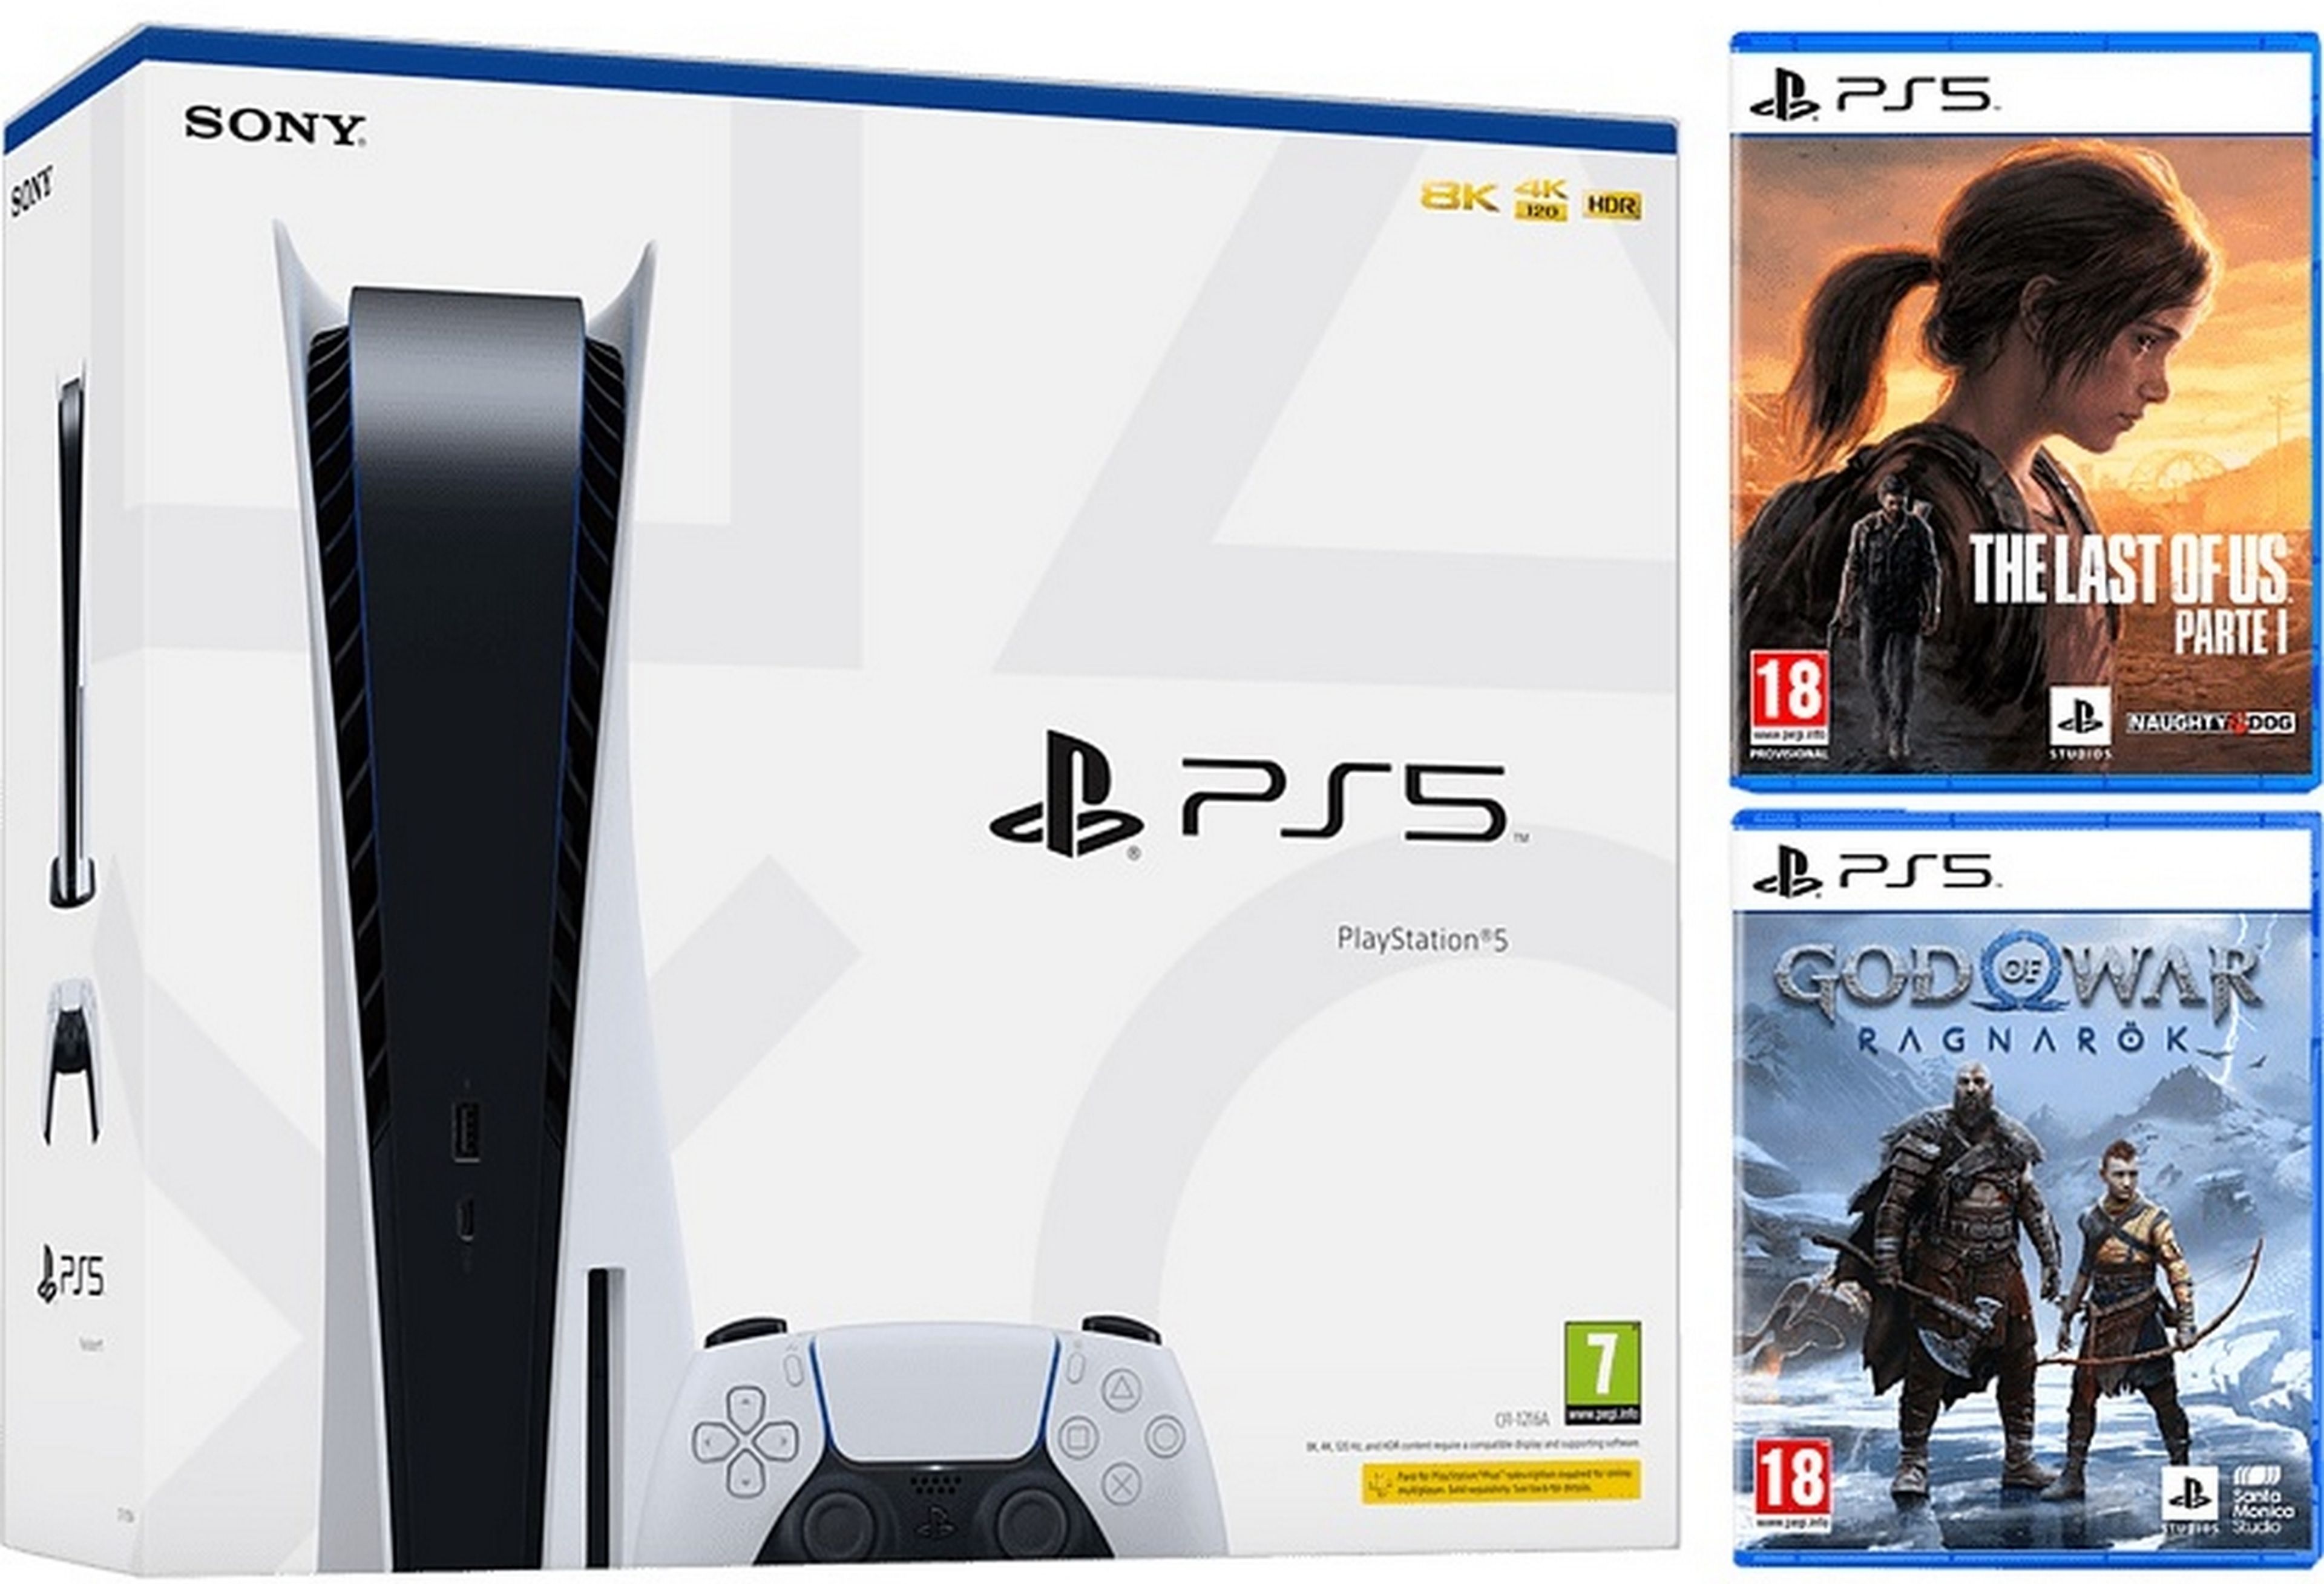 Si buscas una PS5 a buen precio, esta es tu oportunidad: stock con dos juegos exclusivos y sin sobreprecio